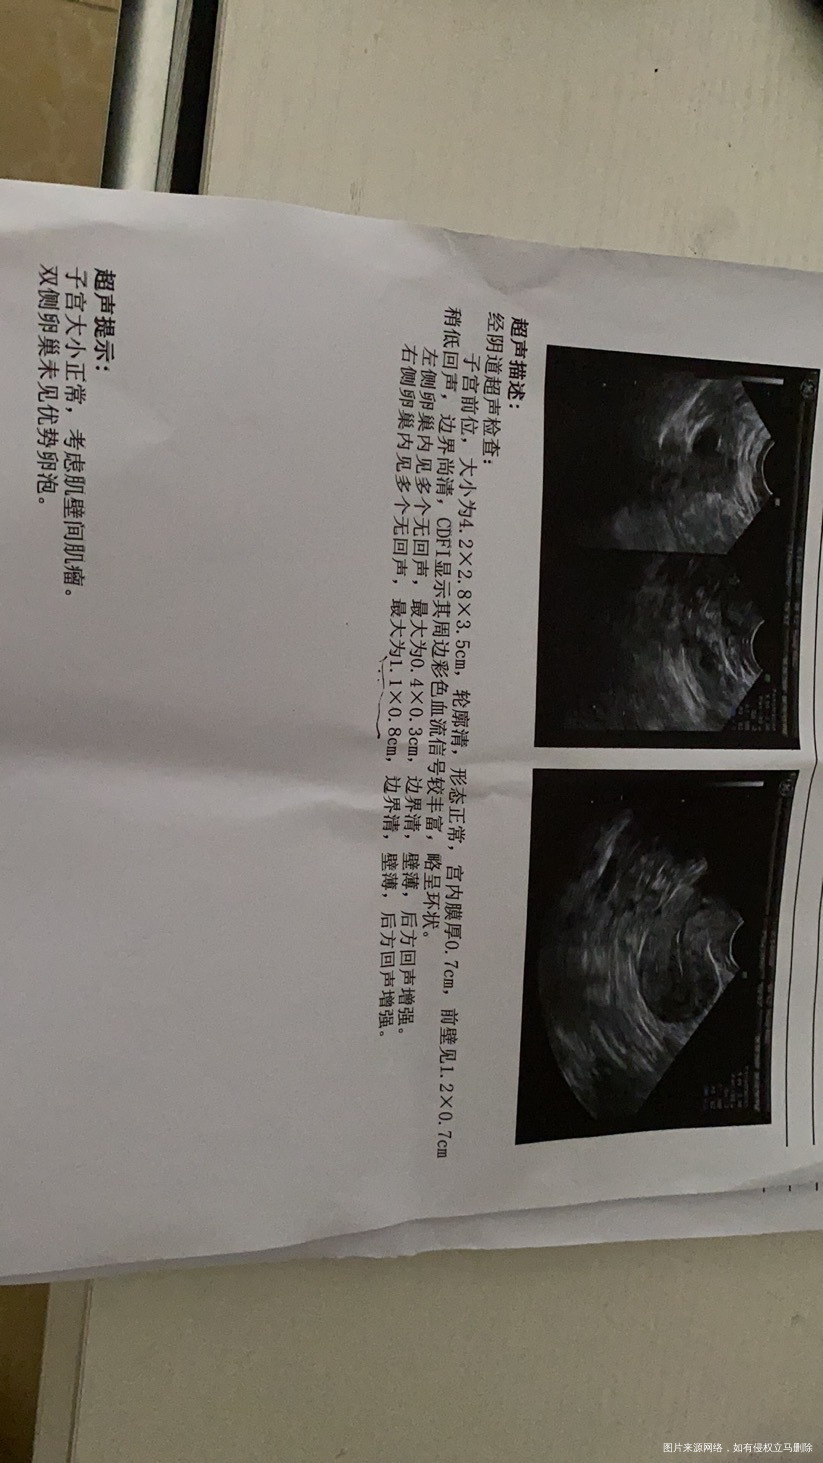 我今年2月份做了宫腹腔镜原因是双侧输卵管积水